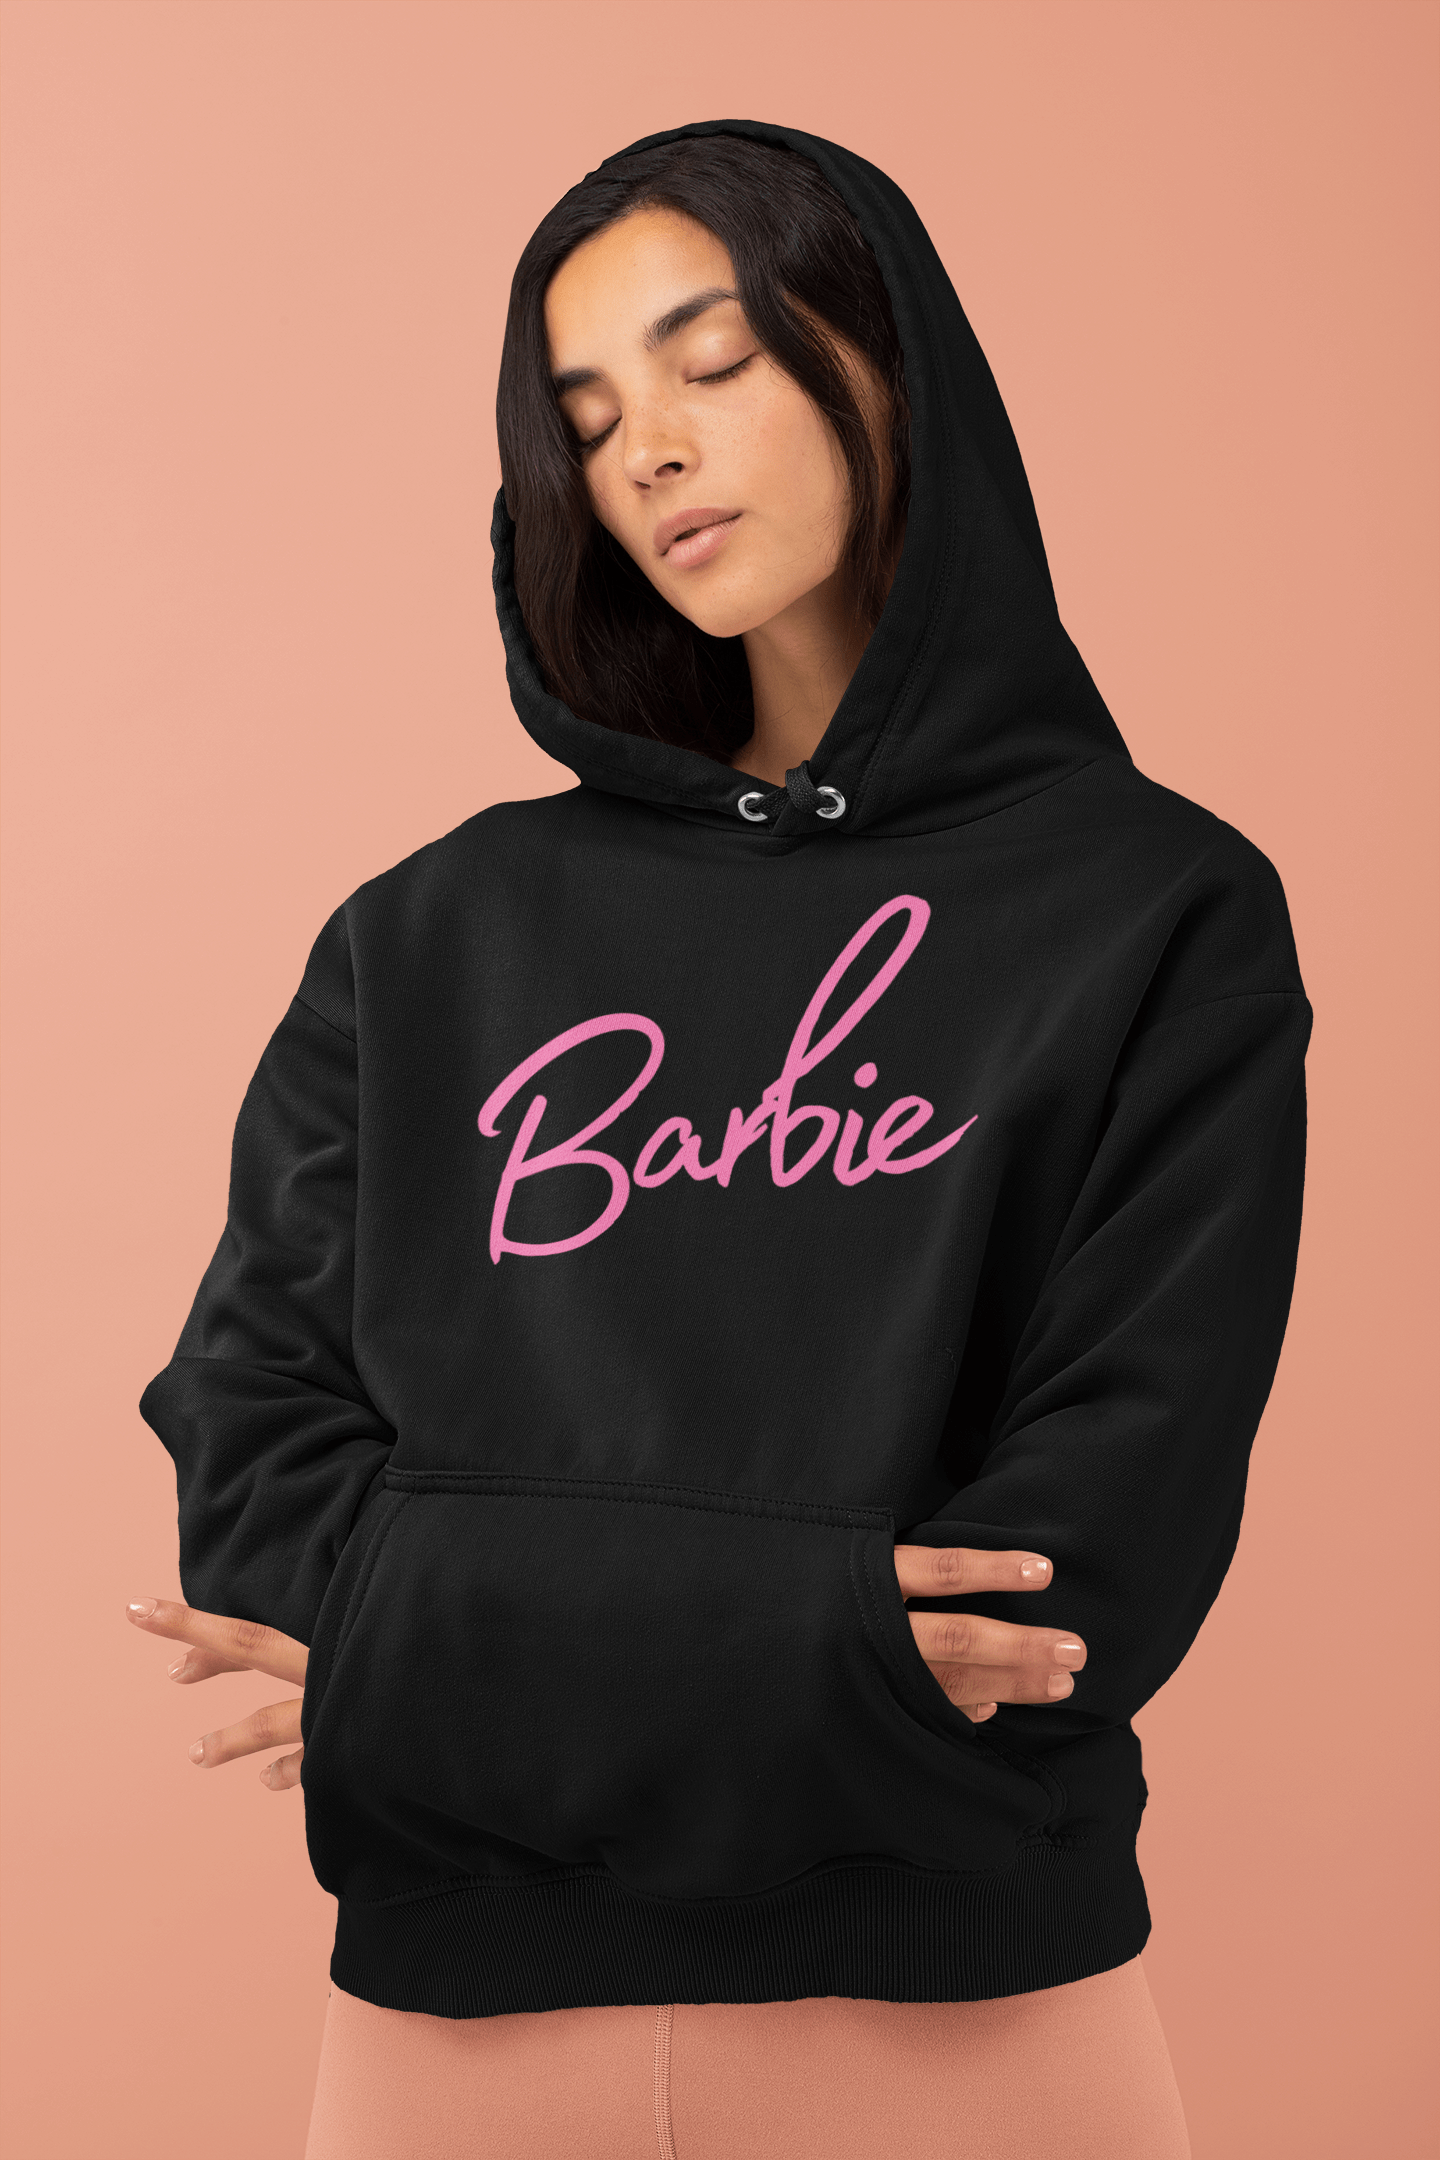 Barbie Hoodie For Girls & Ladies